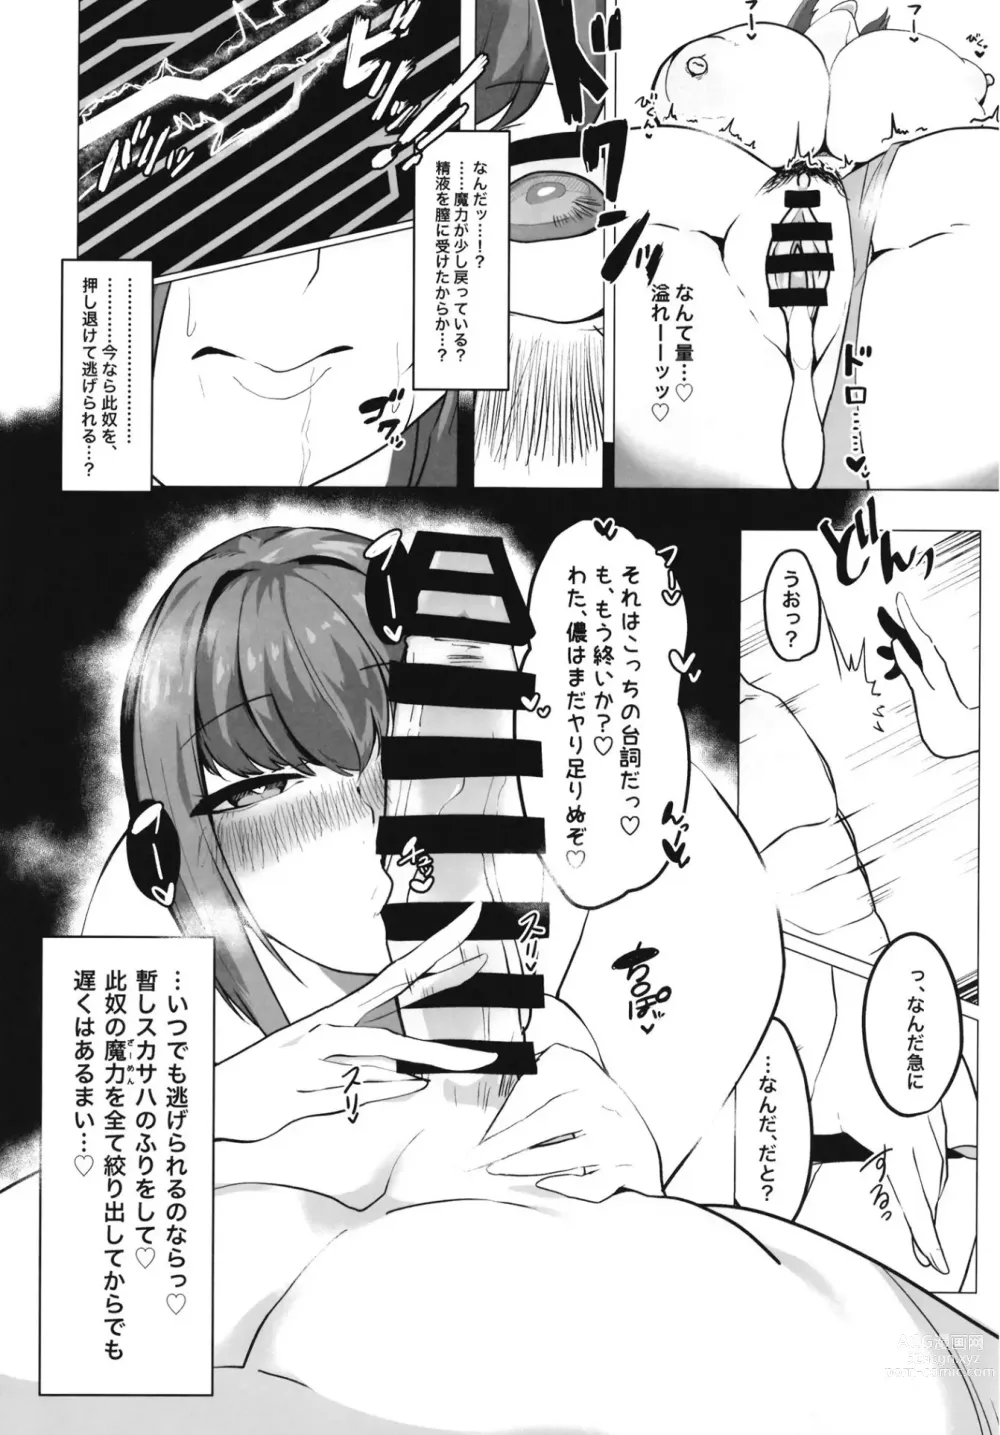 Page 11 of doujinshi Mizugi Skadi, Charao to Yaru.